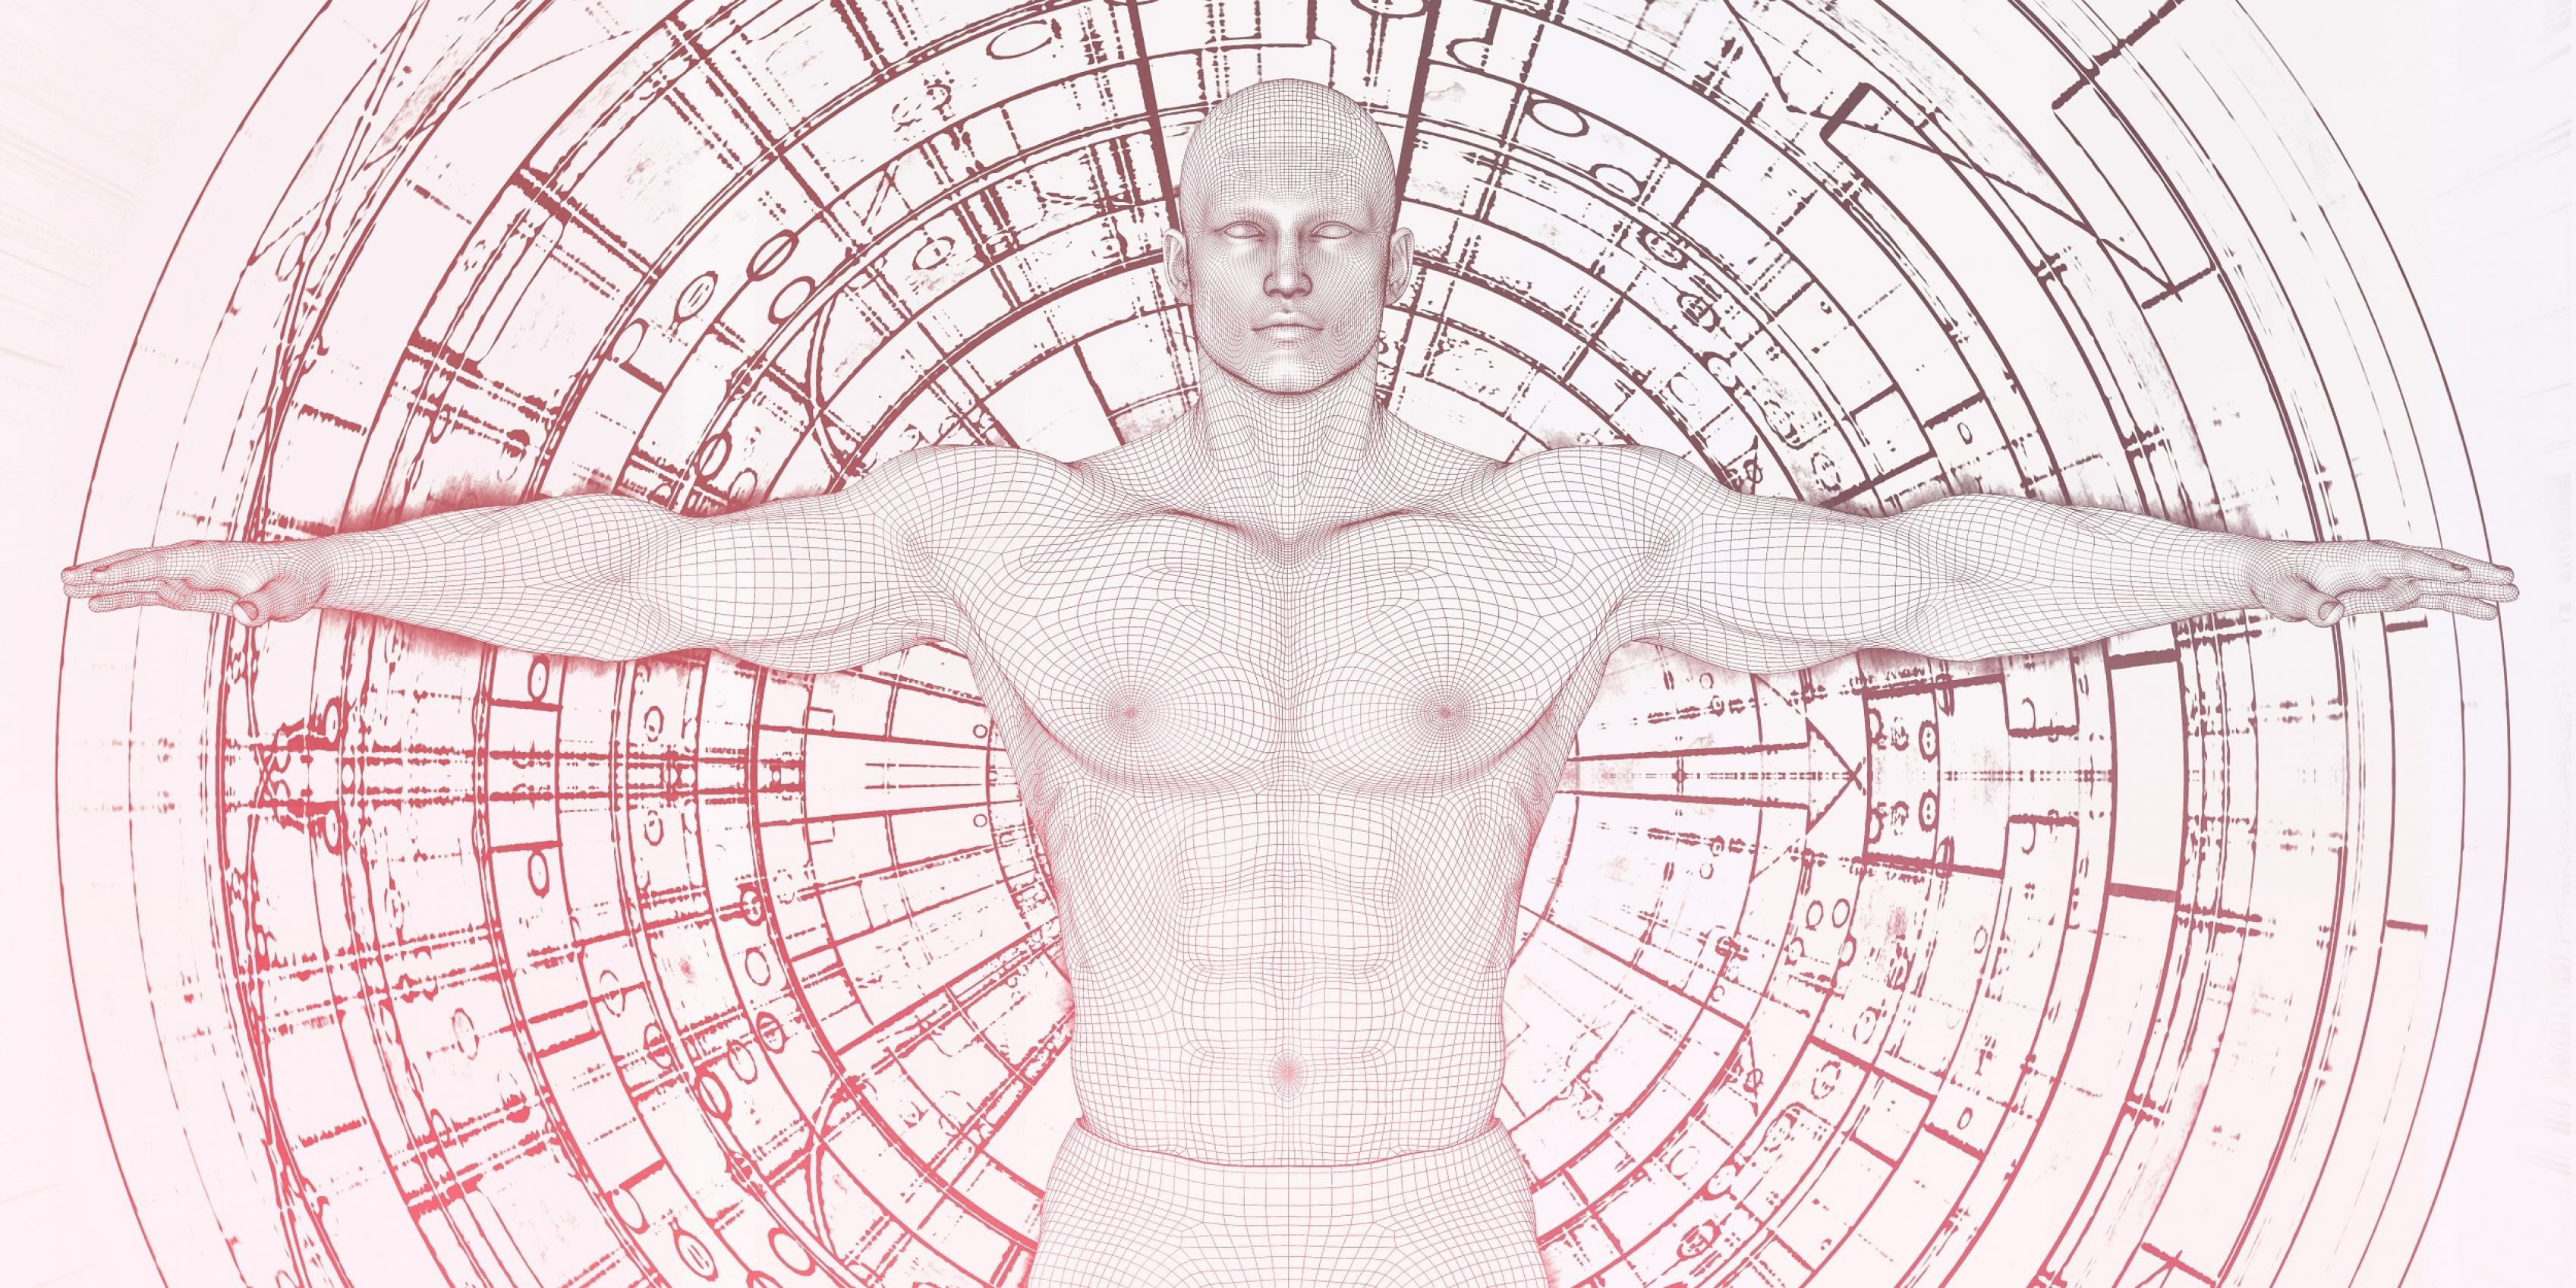 Eine futuristische Grafik zeigt einen Mann mit ausgestreckten Armen vor einem Hintergrund voller kreisförmig angeordneter technischer Zeichnungen.